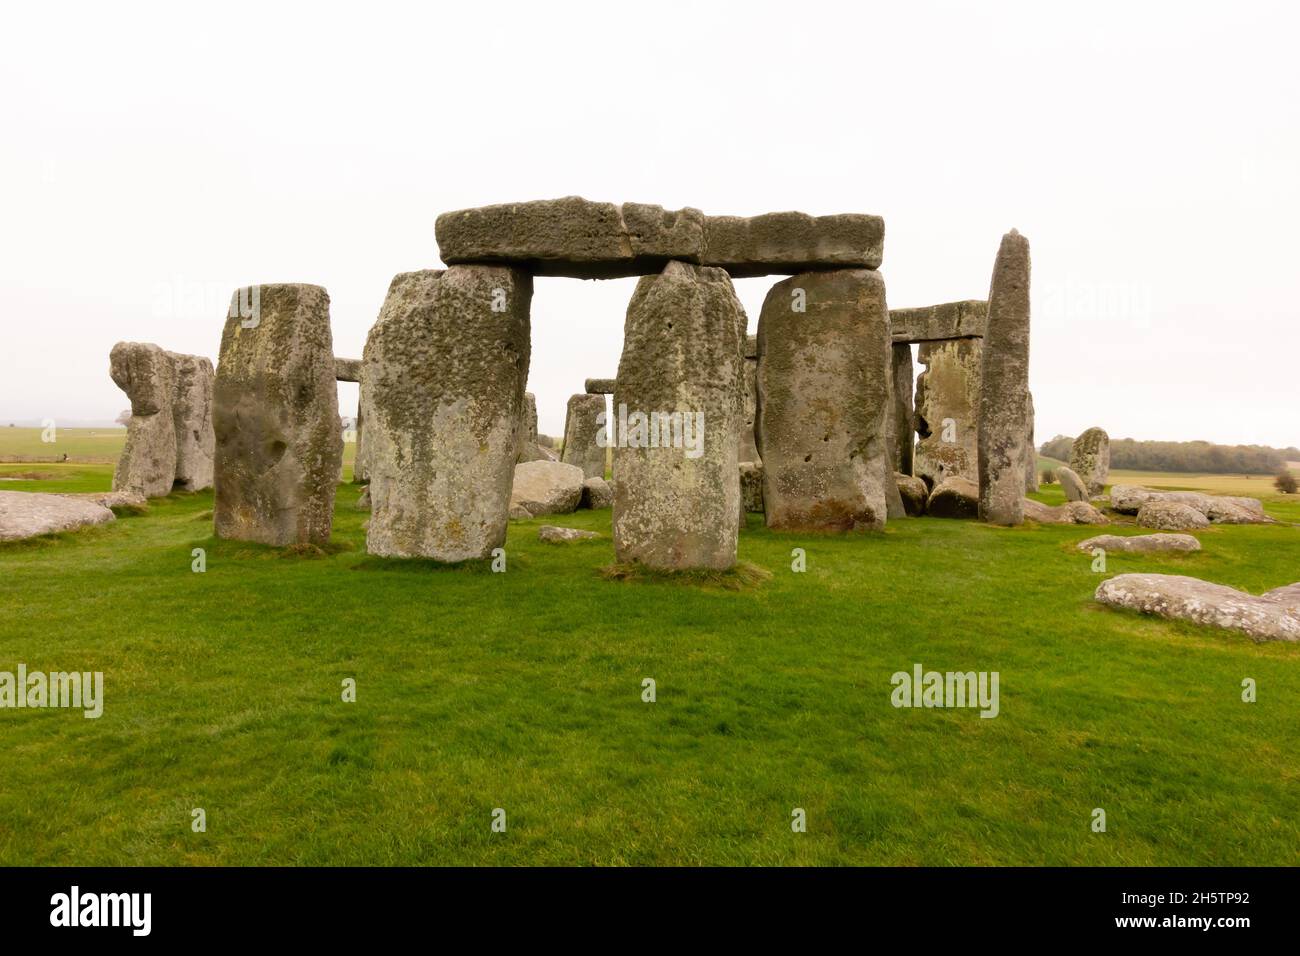 Stonehenge neolithic monument, Amesbury, Wiltshire. Stock Photo